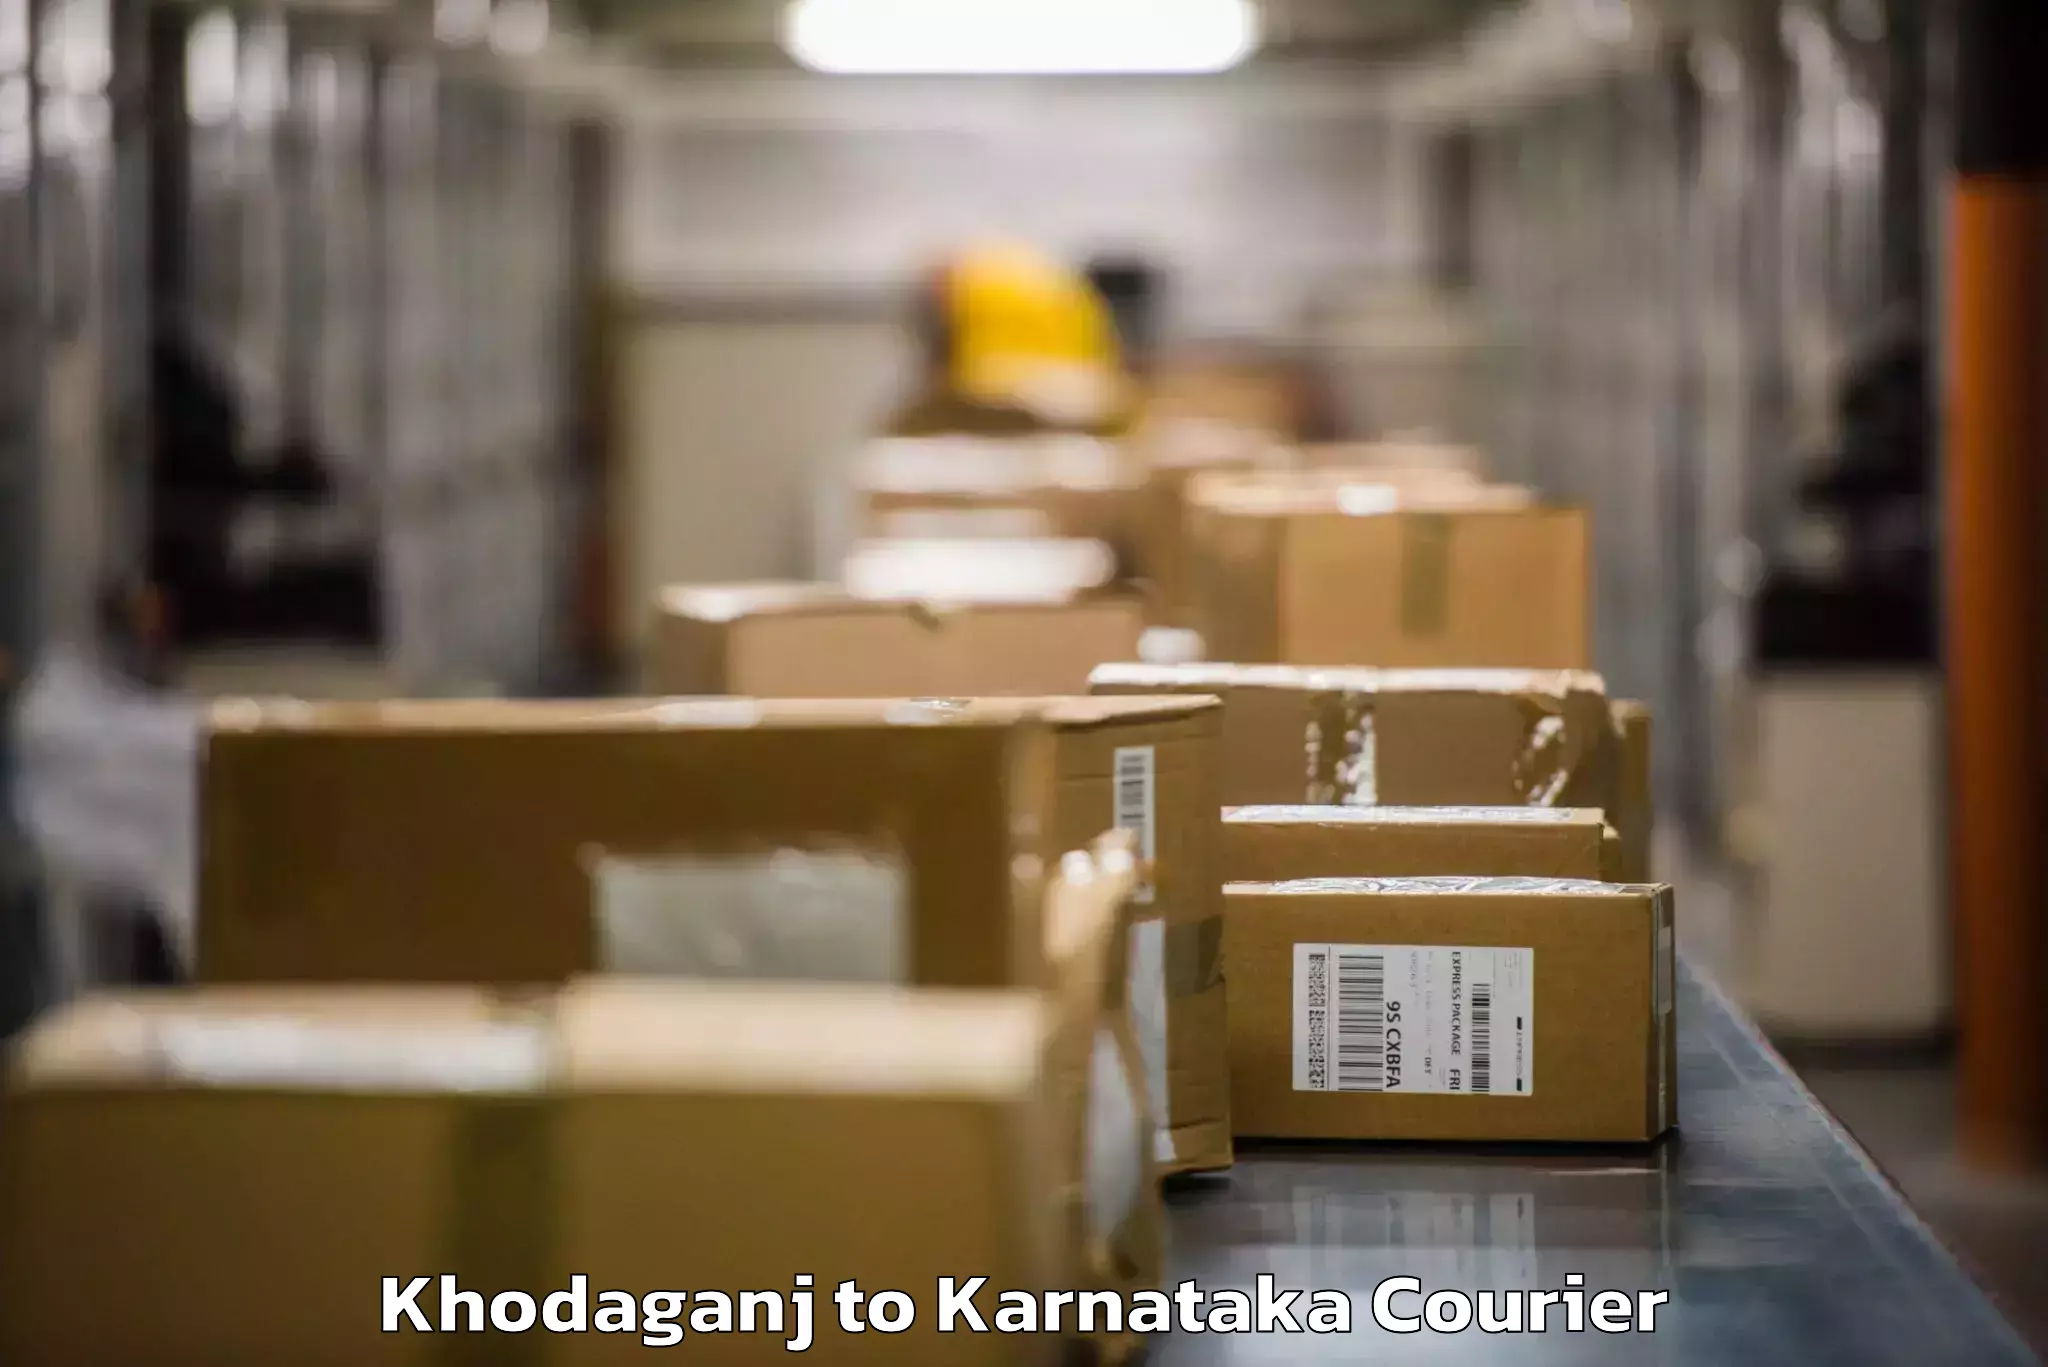 Baggage transport cost Khodaganj to Krishnarajanagara